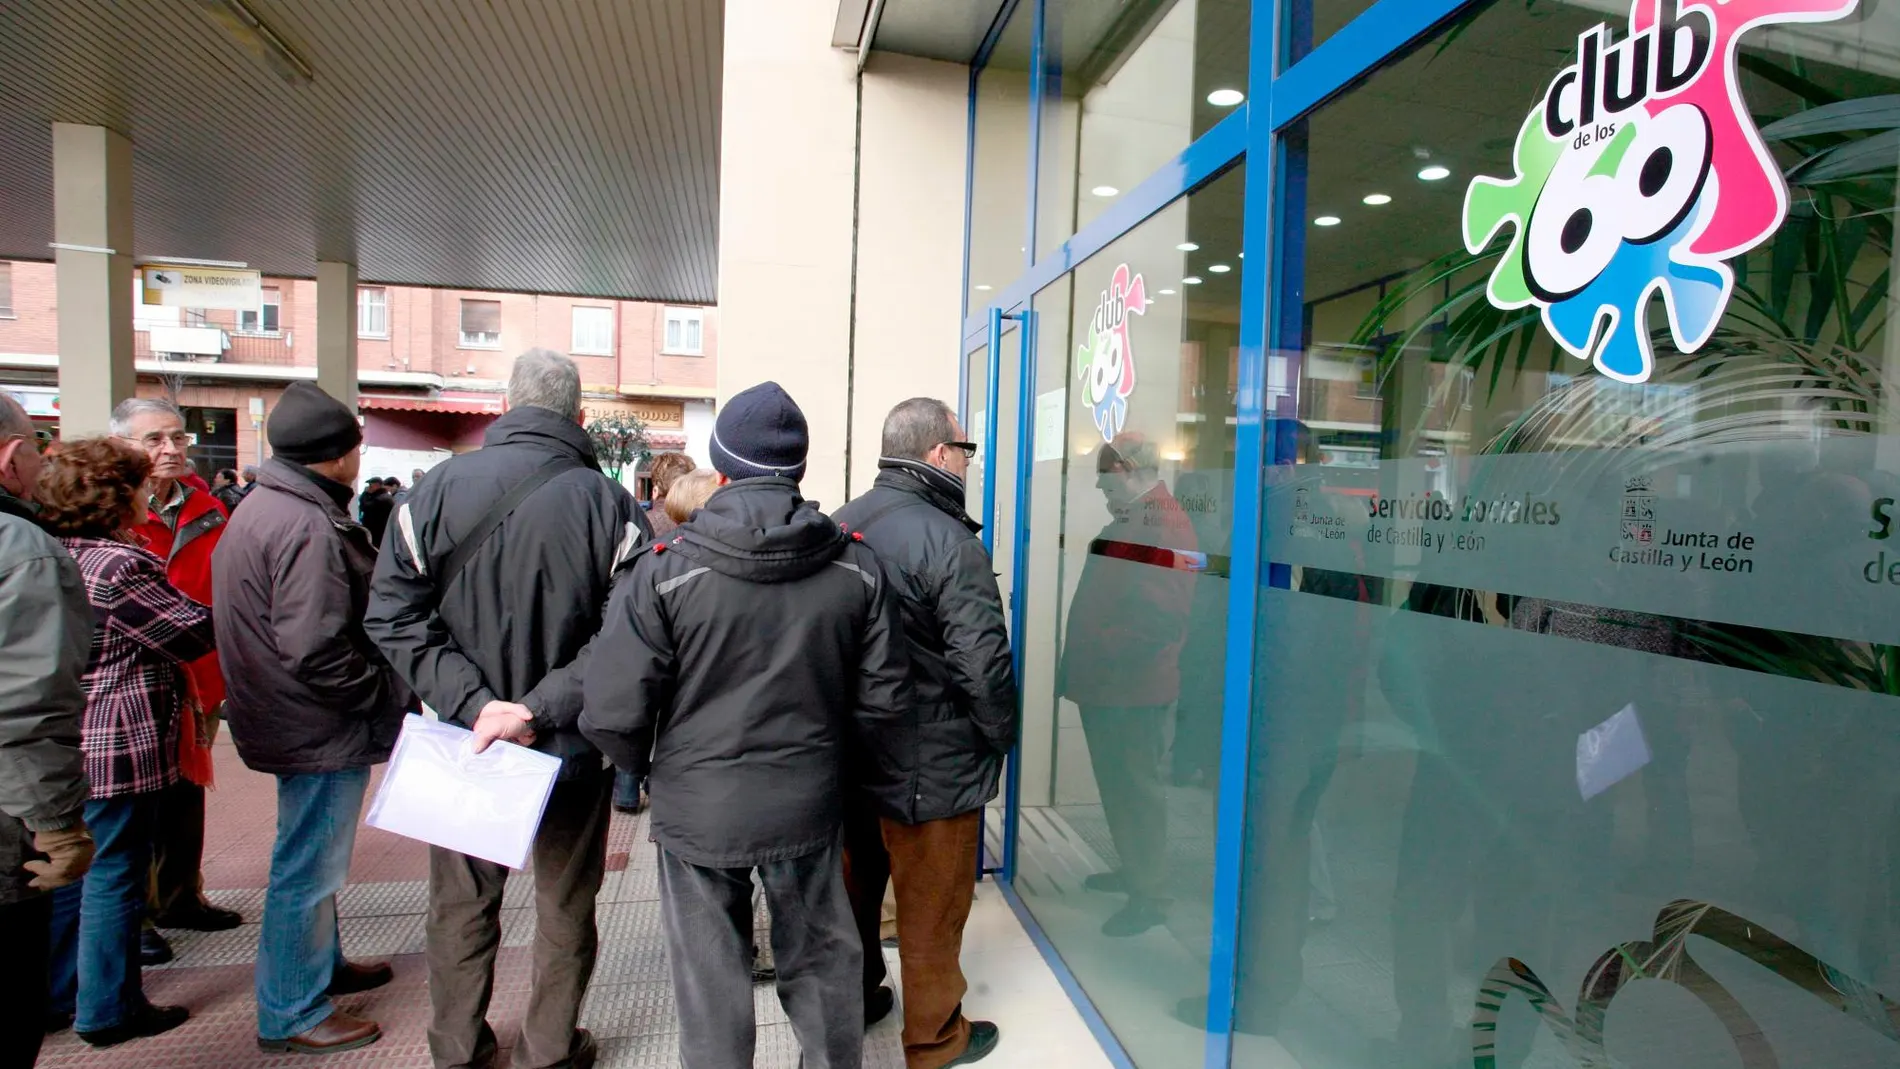 Largas colas a las puertas de las oficinas del Club de los 60 en Valladolid para solicitar una plaza en sus programas de ocio y deporte